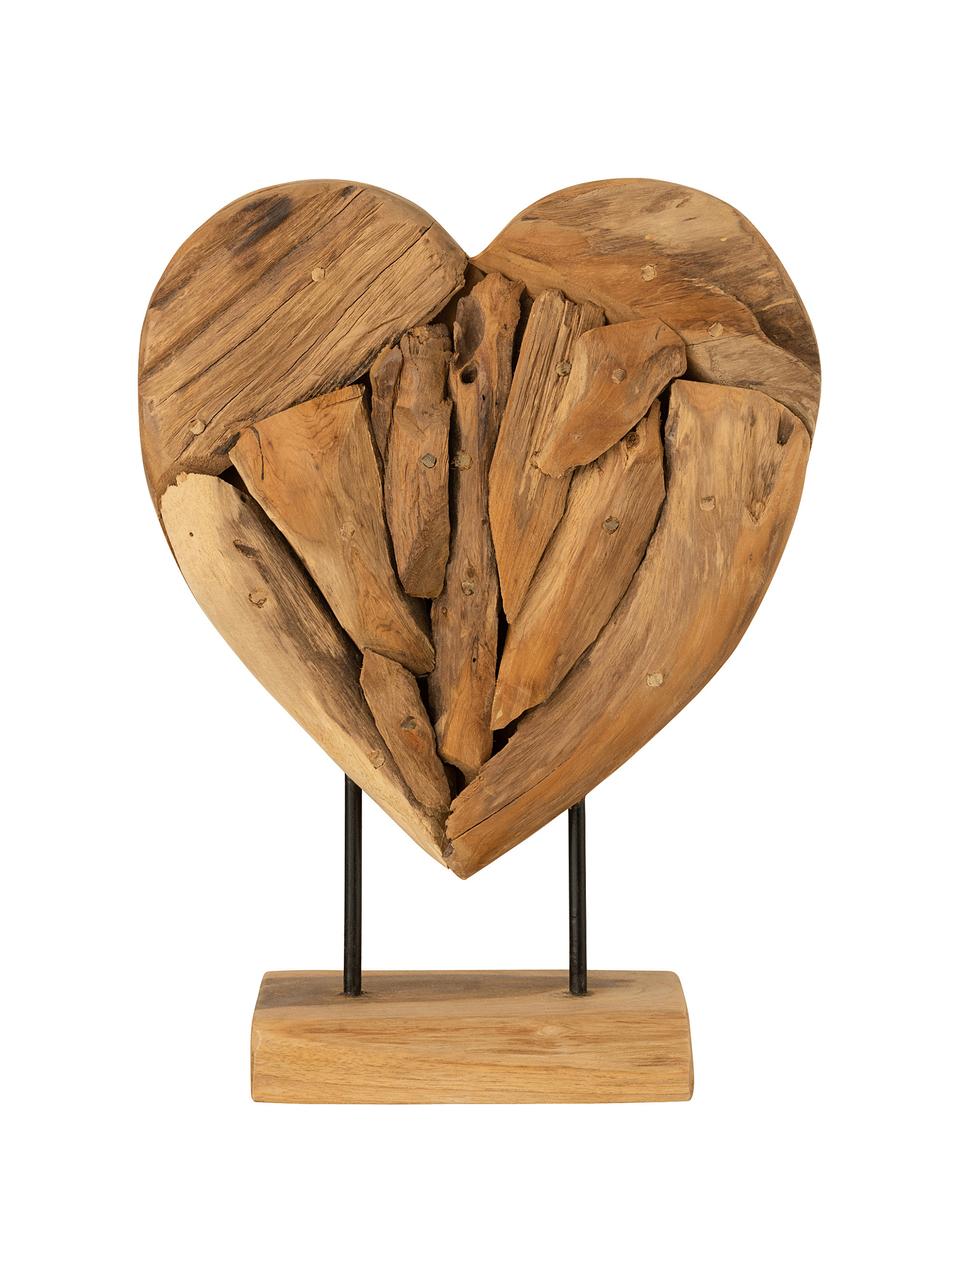 Dekoracja Heart, Drewno naturalne, Brązowy, S 30 cm x W 40 cm